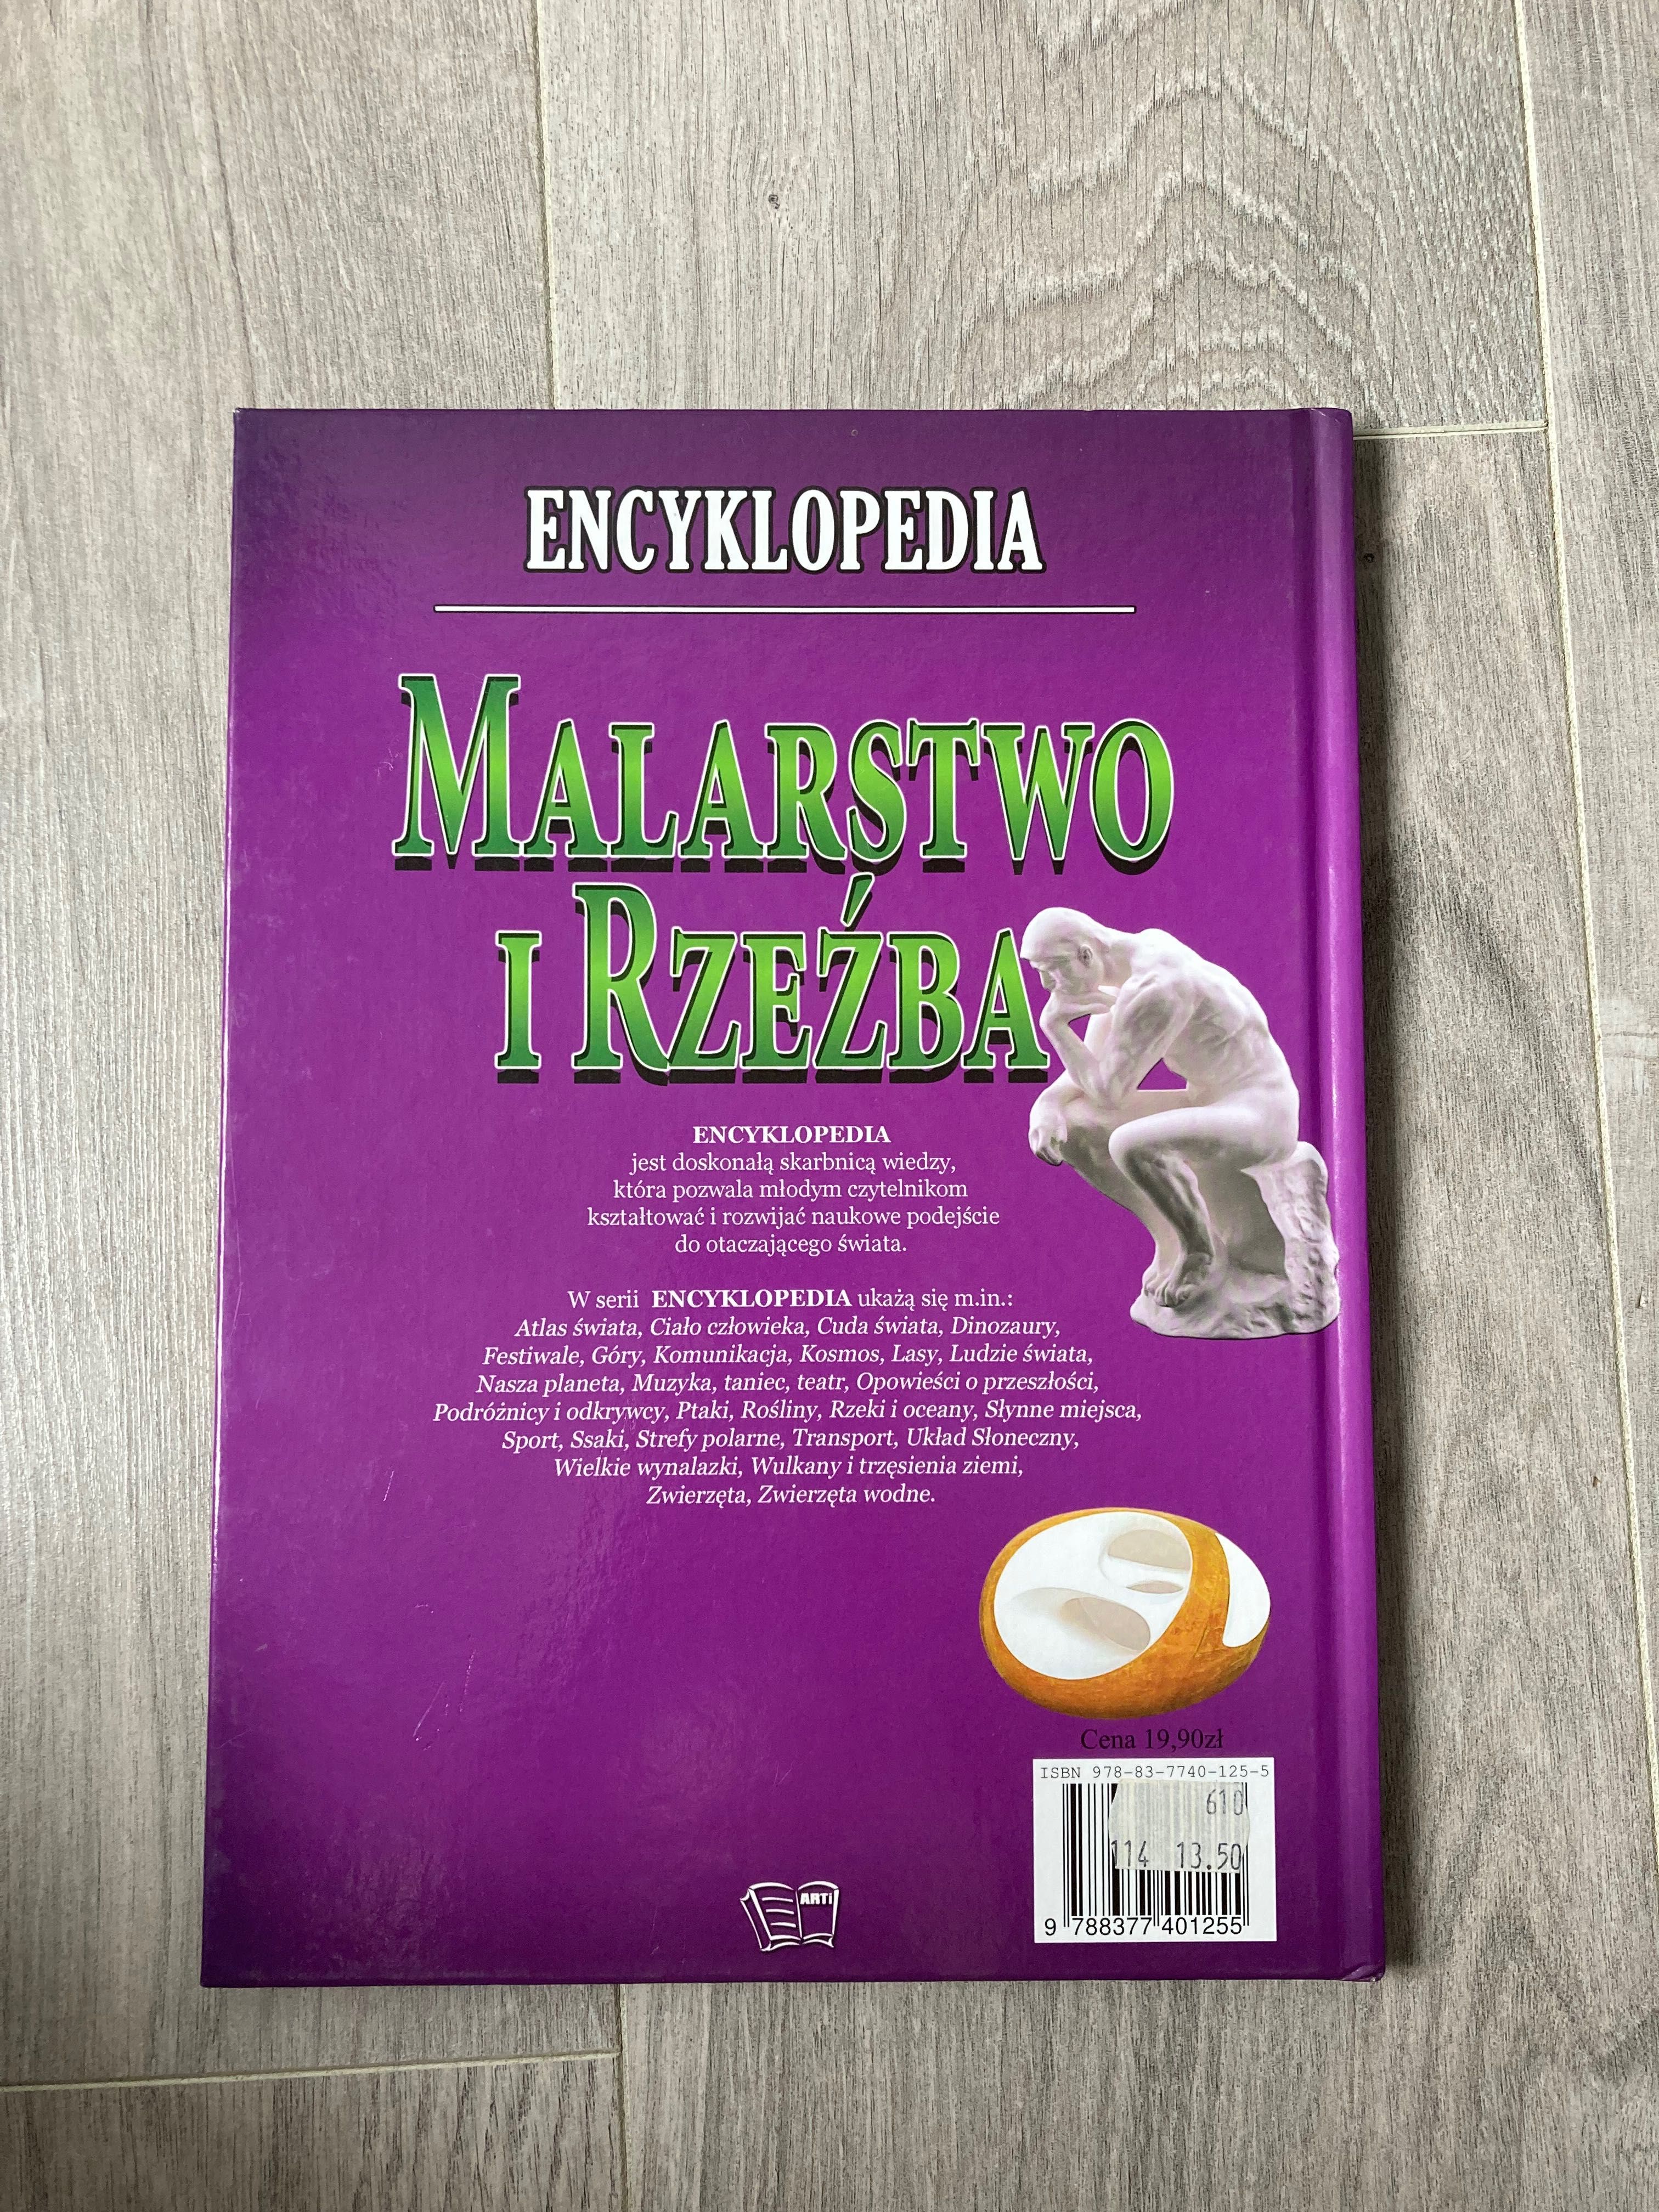 Encyklopedia Malarstwo i Rzeźba